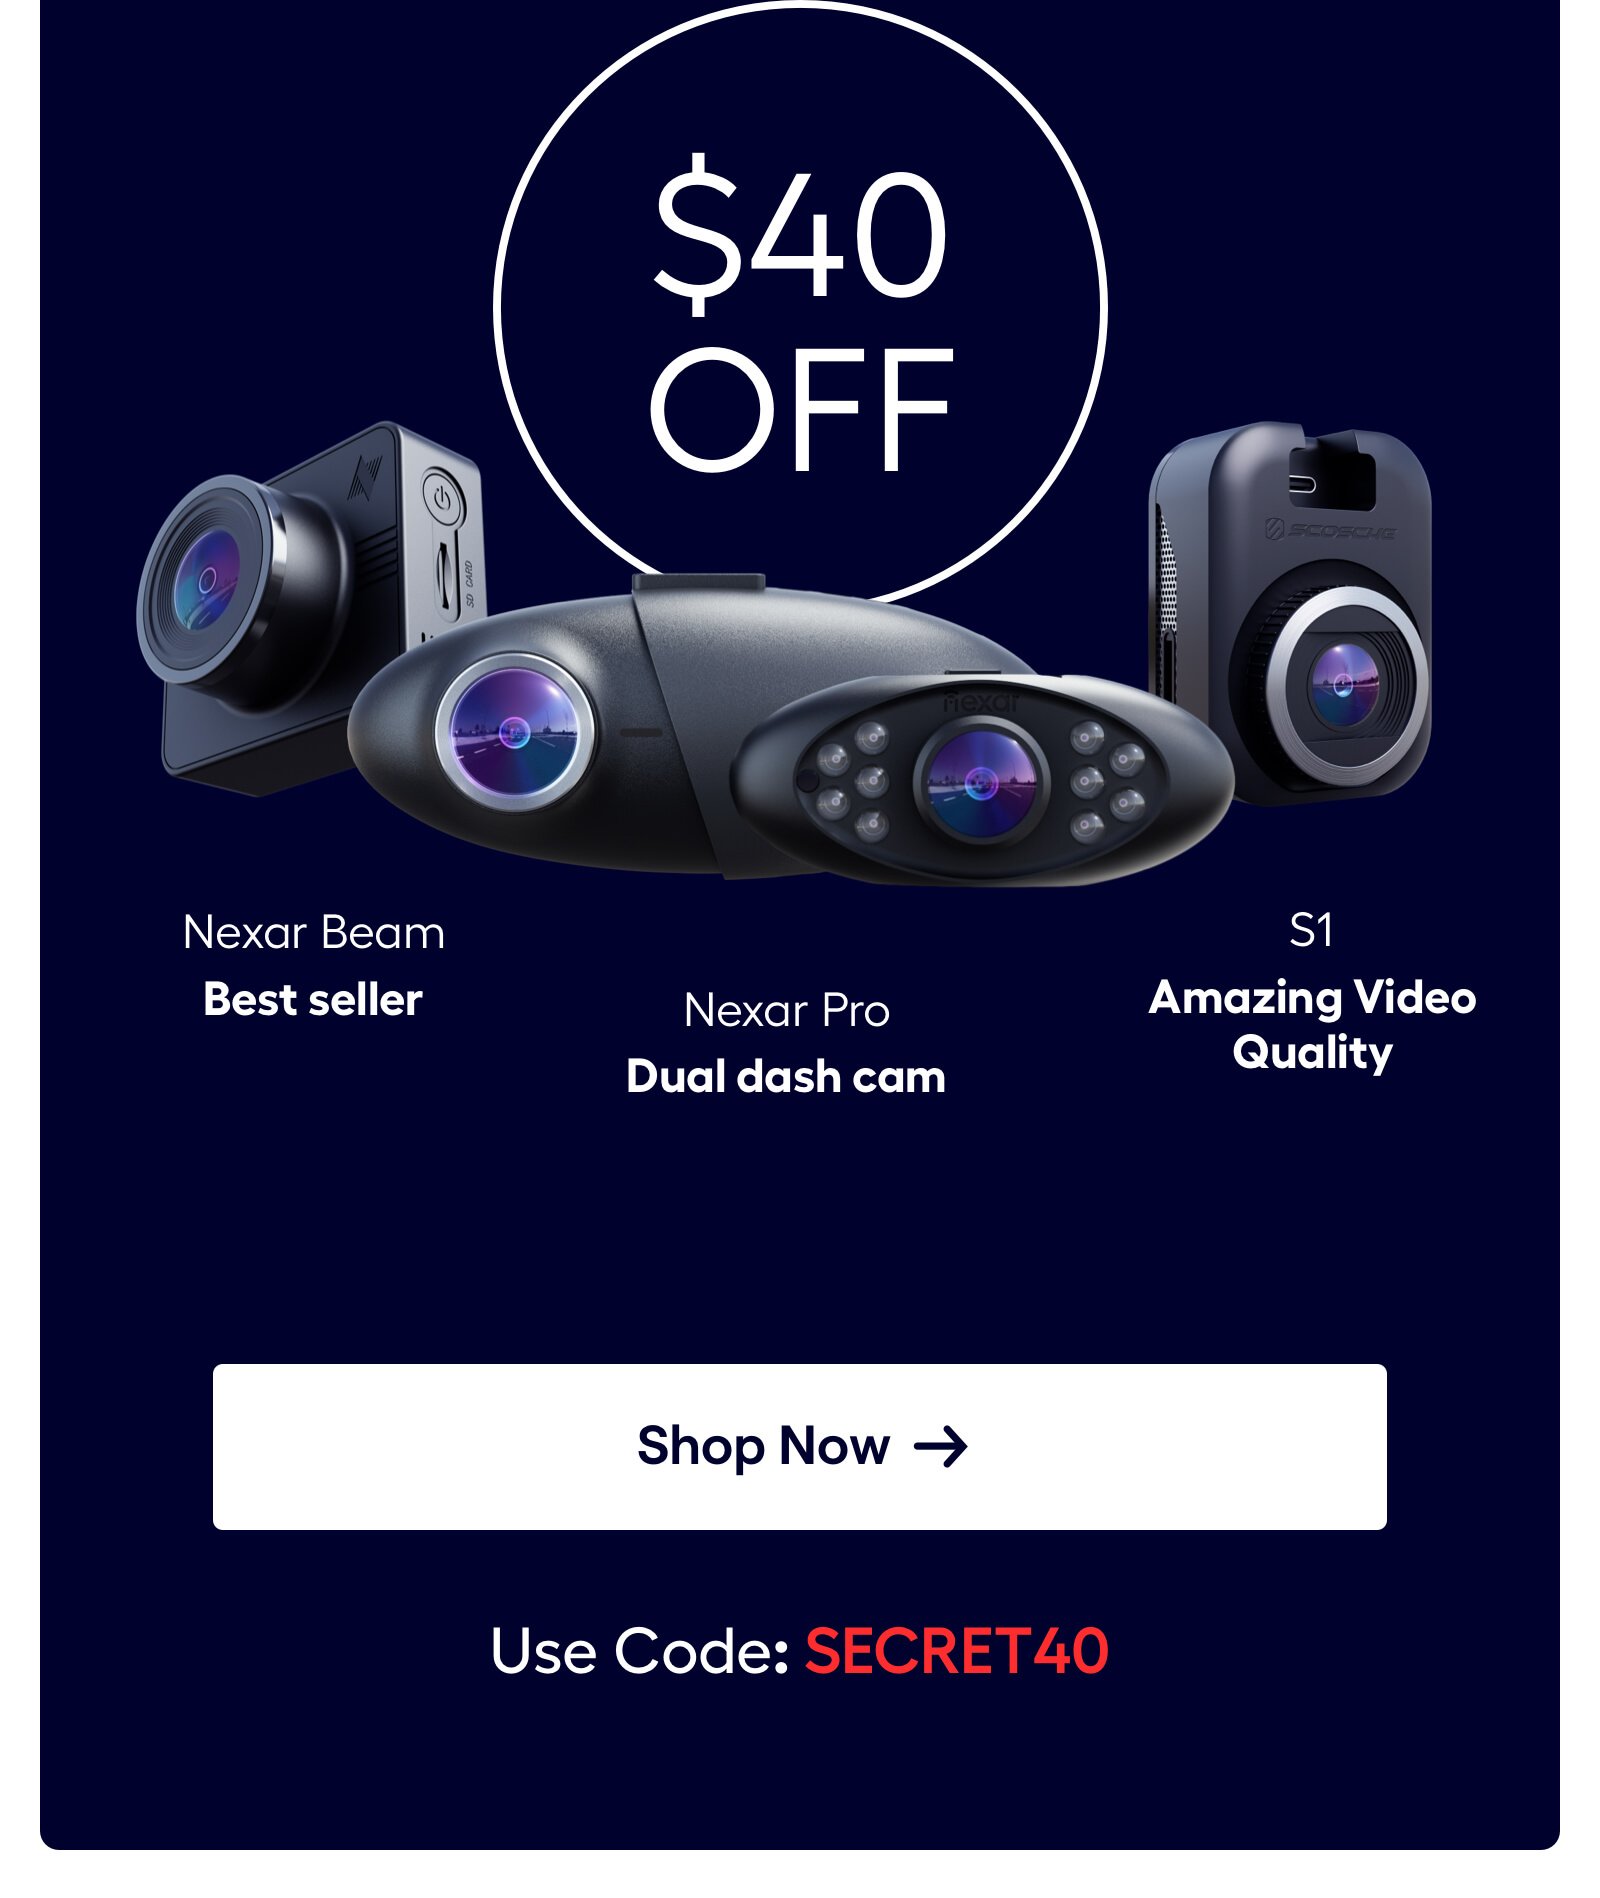 Scosche NEXC1 Smart Dash Cam - Black for sale online